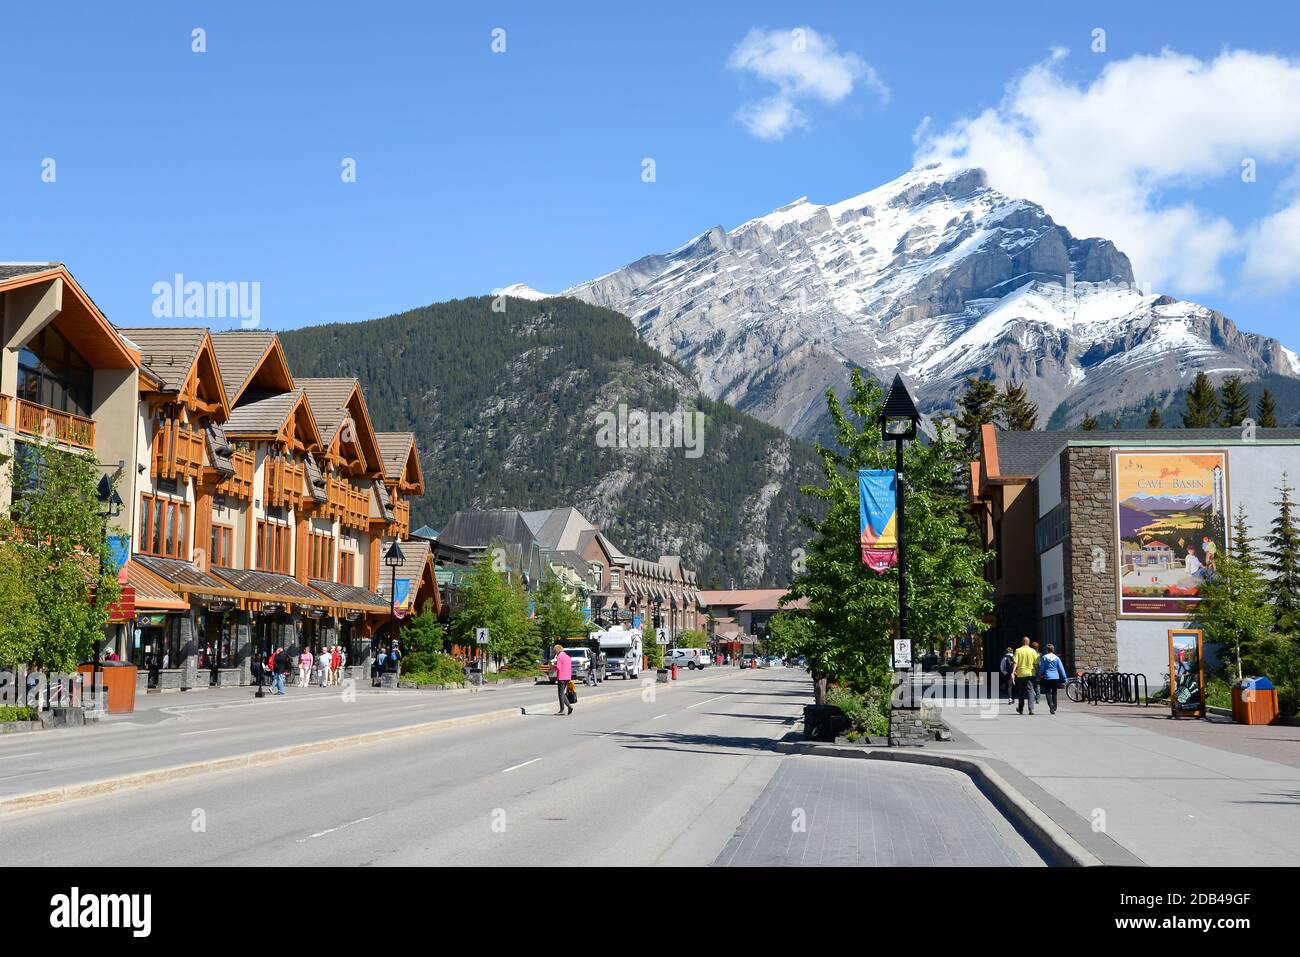 L'avenue Banff, la rue centrale du centre-ville de Banff au Canada par une journée ensoleillée. Ville touristique canadienne avec le mont Norquay derrière. Banque D'Images